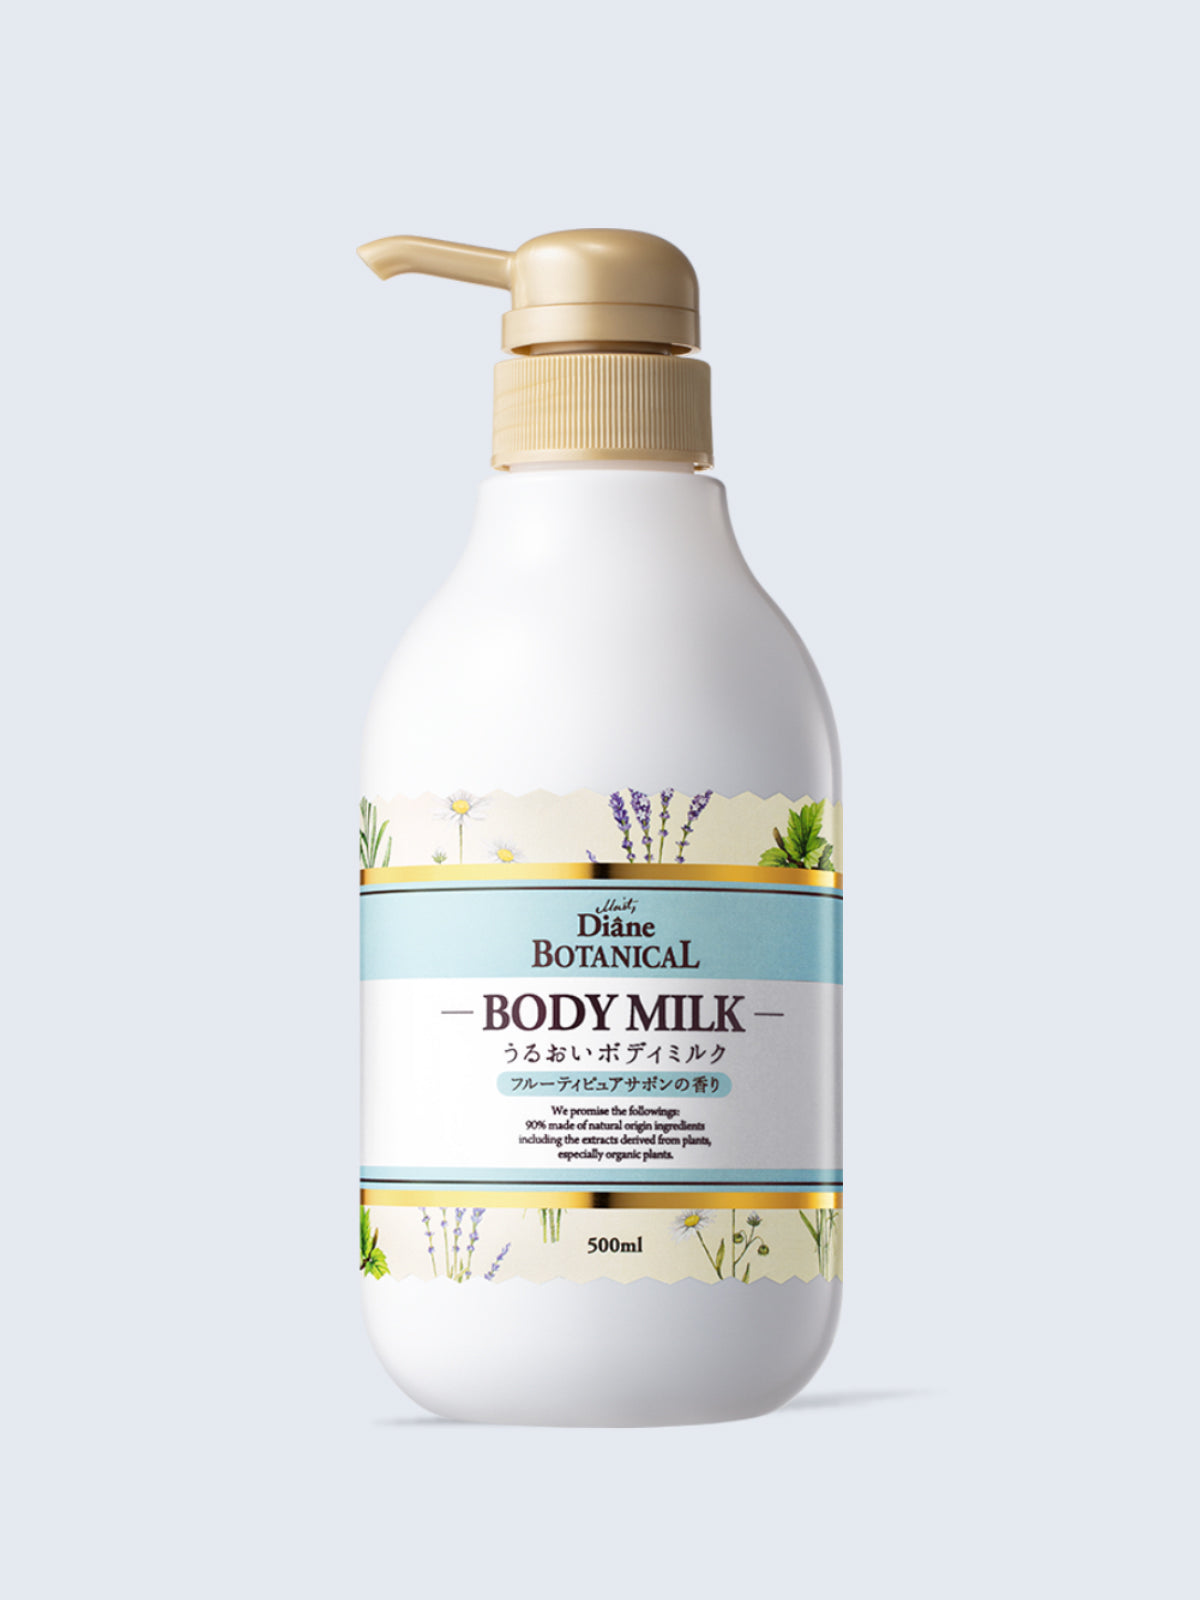 ボディミルク [敏感肌にもやさしい] フルーティピュアサボンの香り ダイアンボタニカル 500mL - NatureLab Store